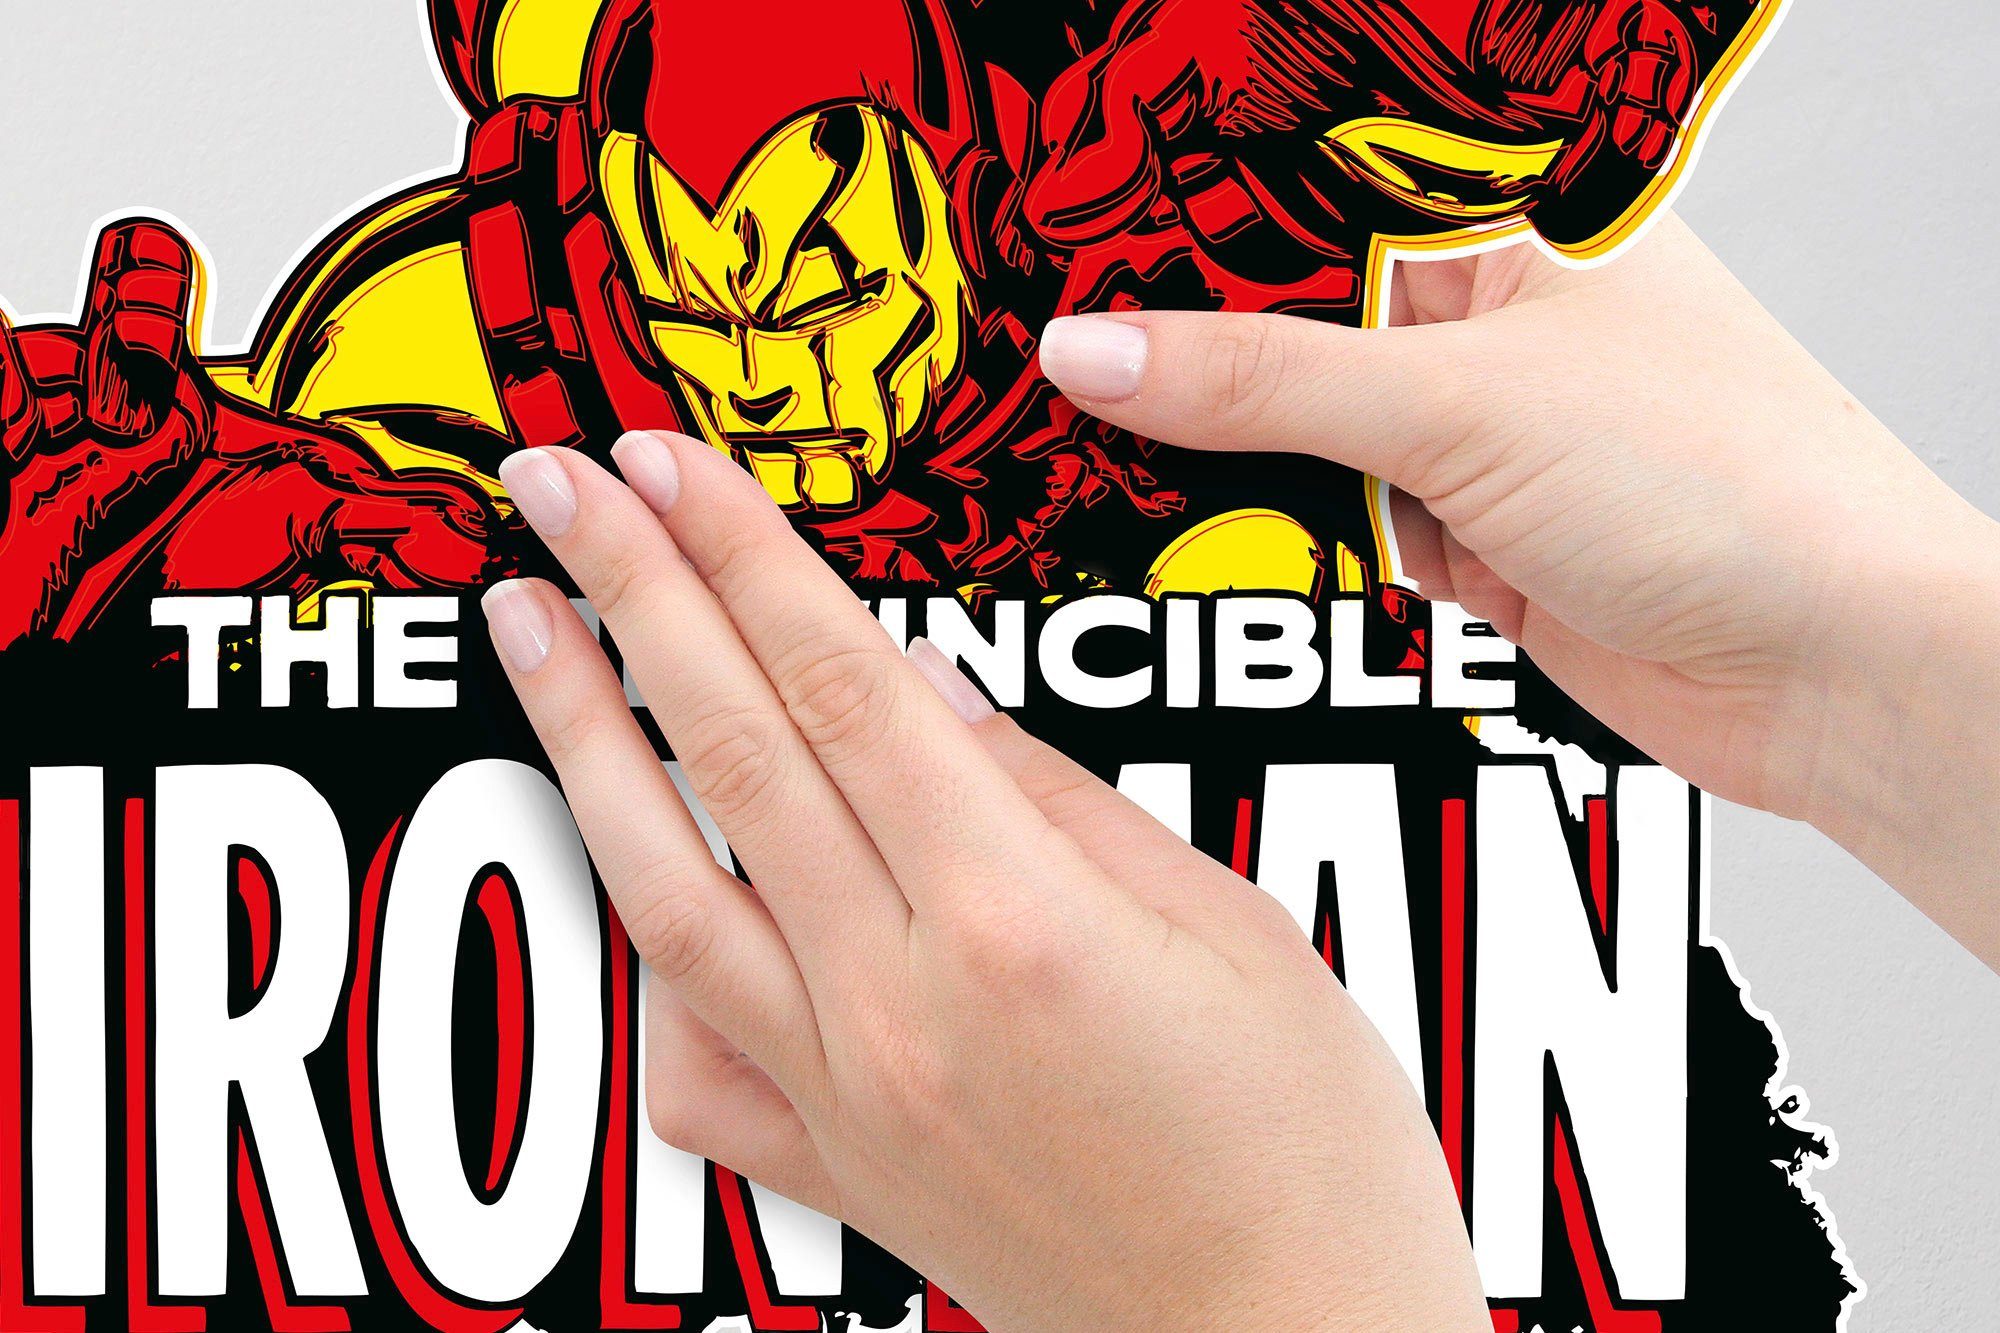 Komar Wandtattoo Iron Man Wandtattoo selbstklebendes cm 50x70 Comic Höhe), x Classic St), (Breite (1